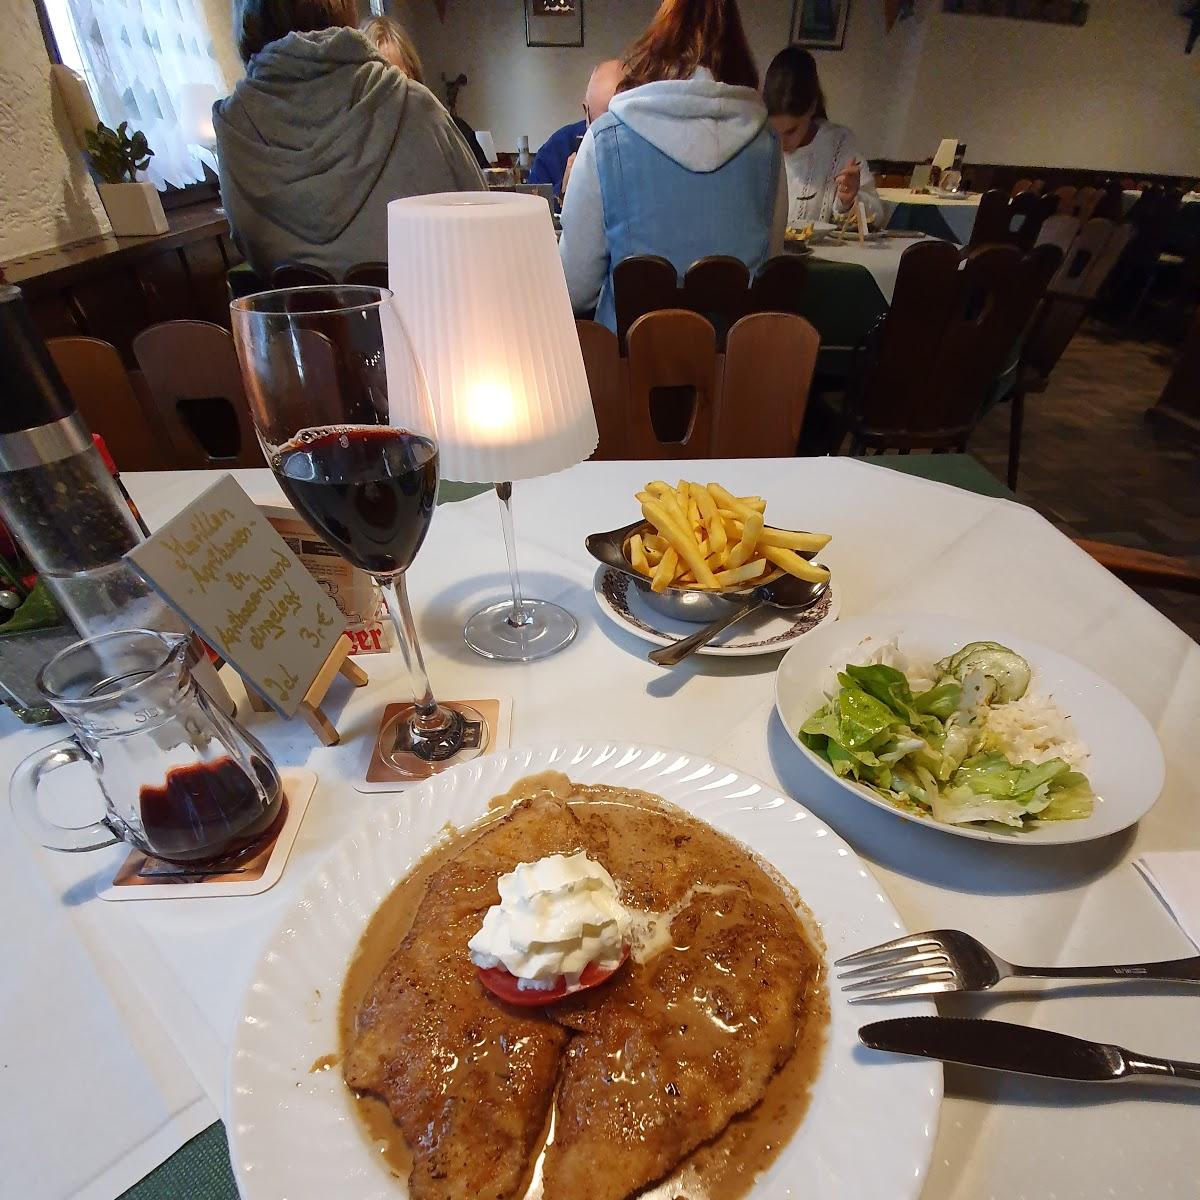 Restaurant "Zu den Zwei Bären" in Griesheim